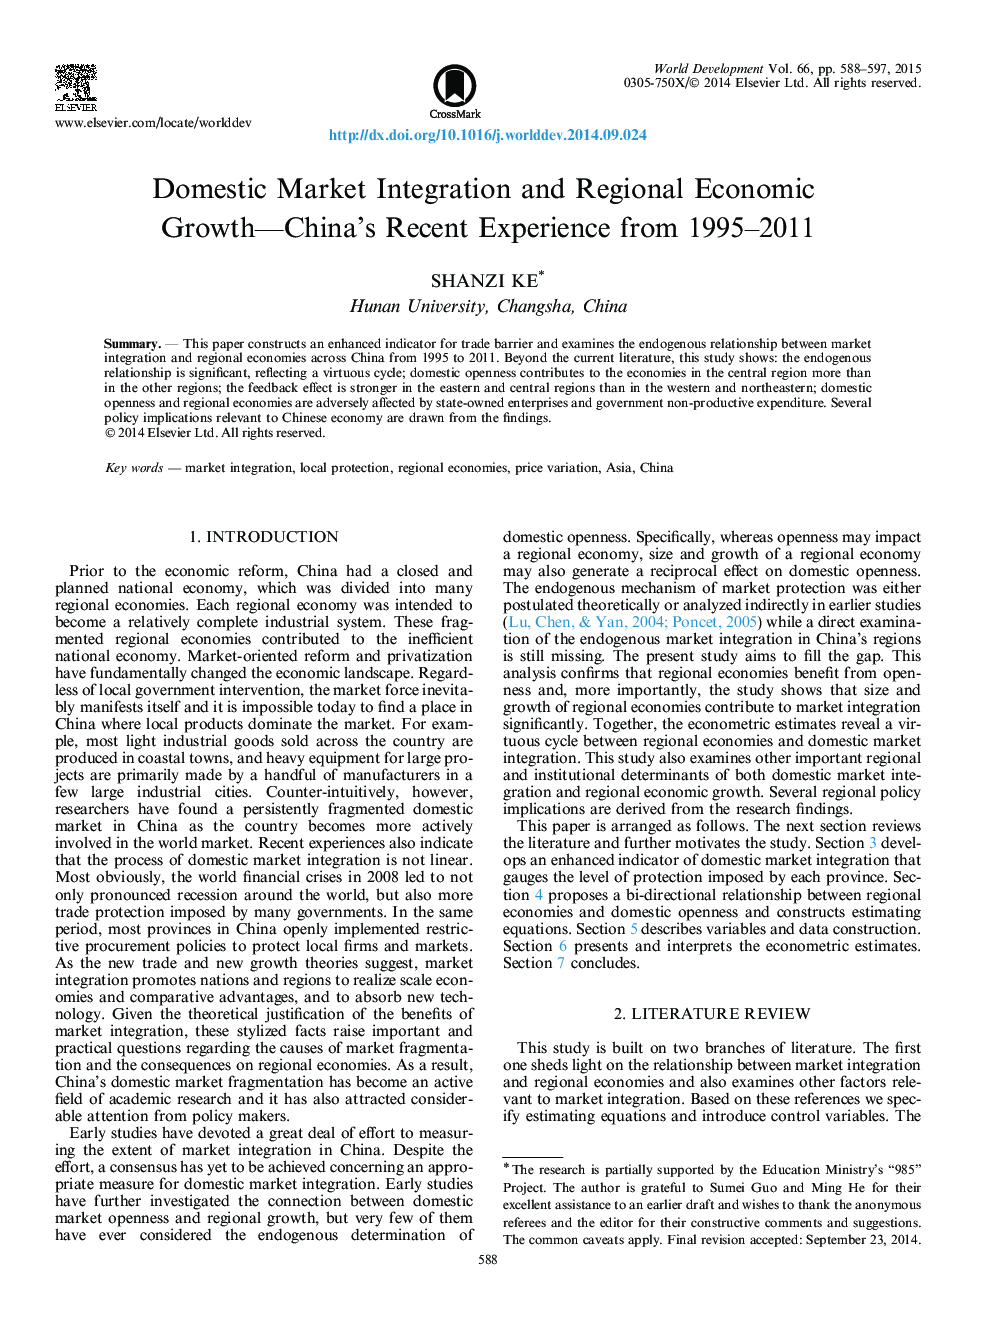 یکپارچگی بازار داخلی و رشد اقتصادی منطقه ای - تجربه اخیر چین در سالهای 1995-2011 